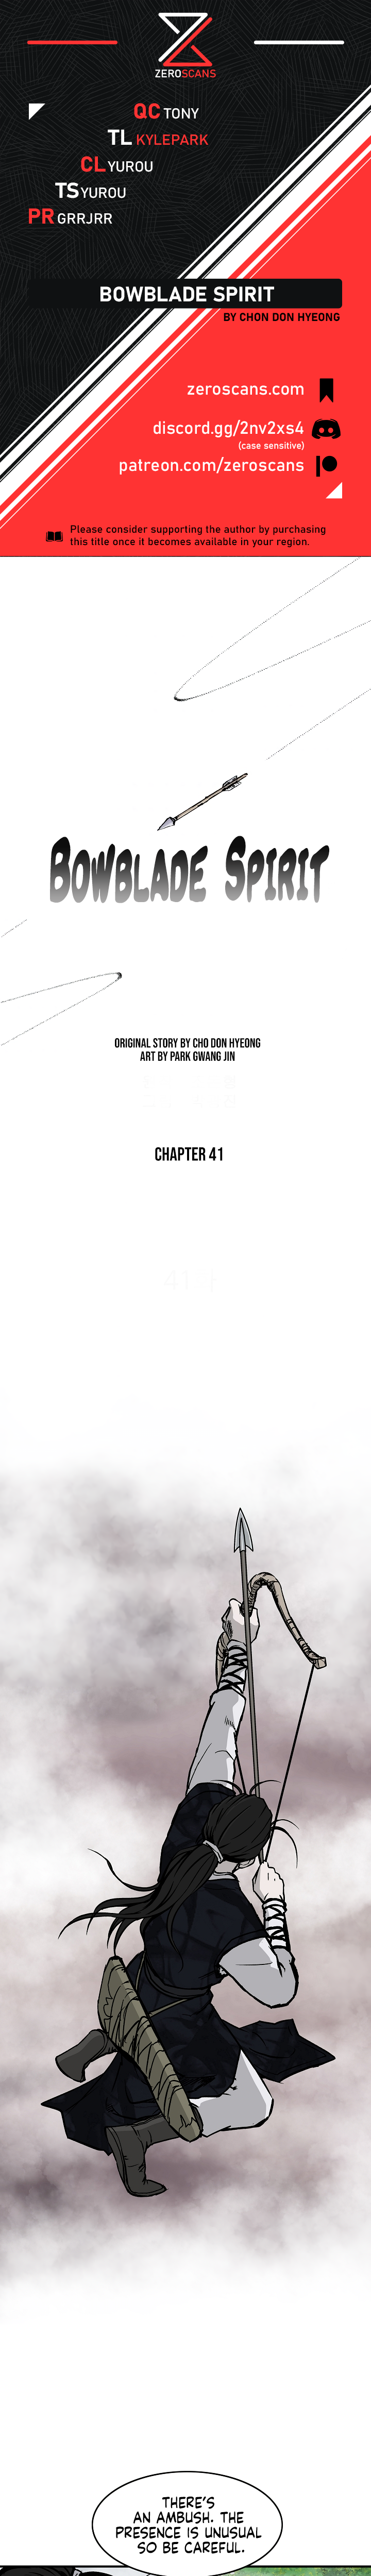 Bowblade Spirit - Chapter 3729 - Image 1